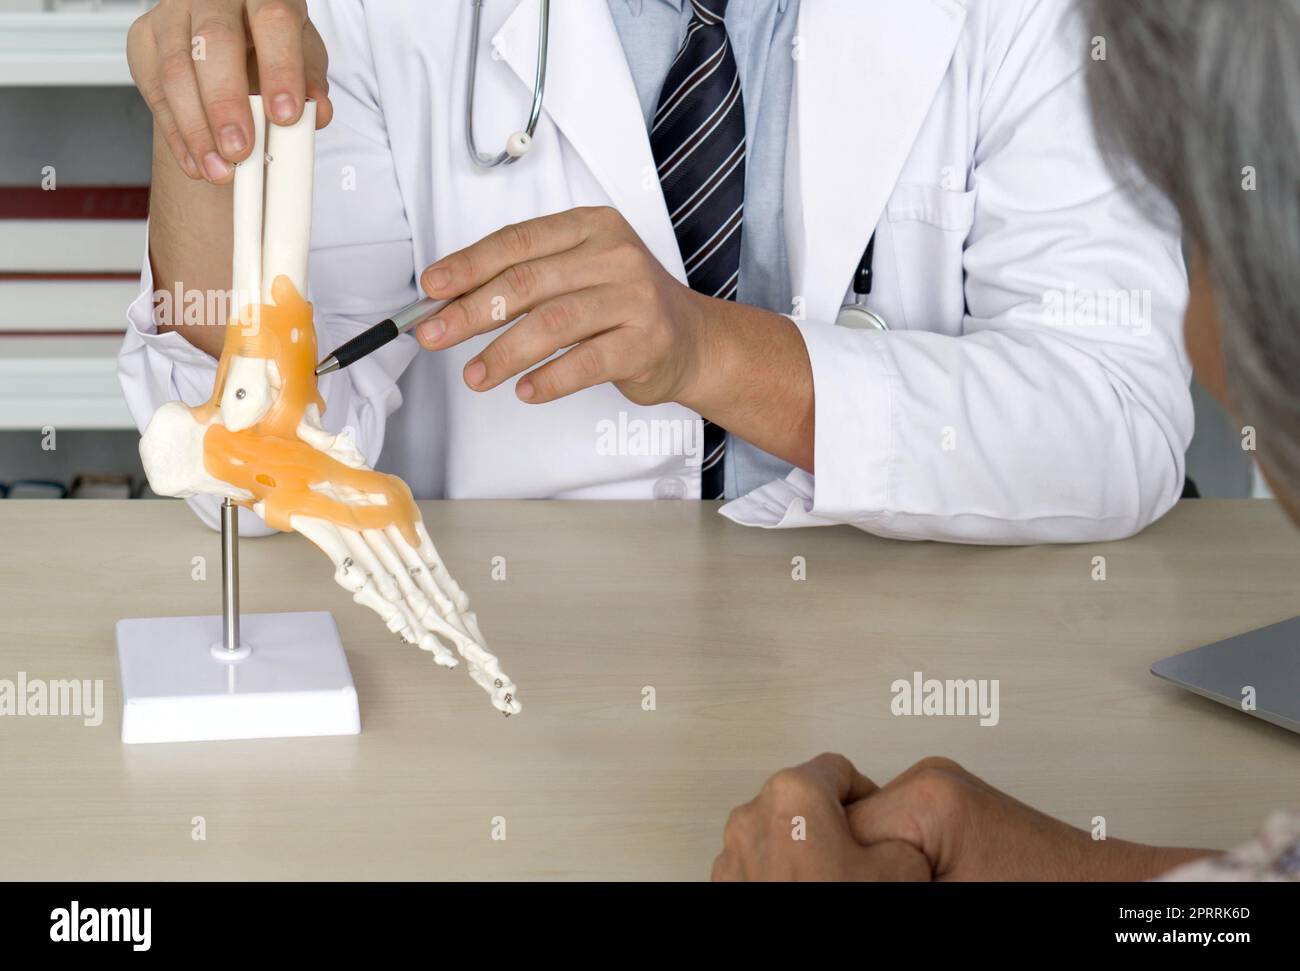 Orthopädischer Chirurg im weißen Kittel und Stethoskop, der auf das menschliche Skelett des Fußknöchelgelenkes zeigt, ein Modell für die Anatomie des Sprunggelenkes, dem älteren Patienten zur chirurgischen Behandlung des Sprunggelenks präsentiert. Stockfoto